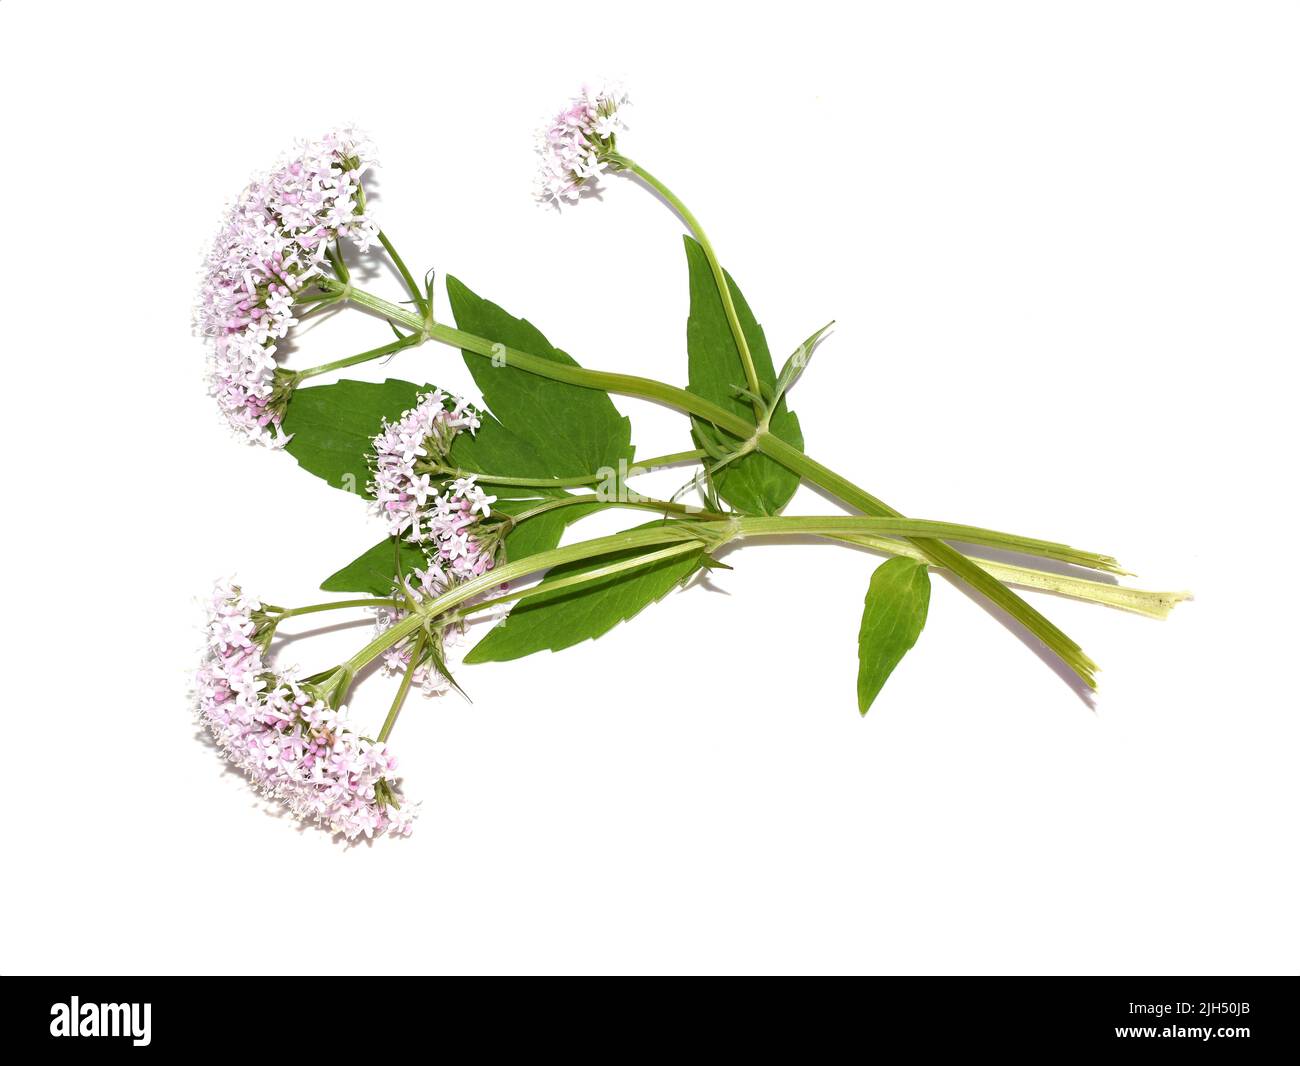 Comune valeriana pianta medicinale sambucifolia fiori rosa isolato su sfondo bianco Foto Stock